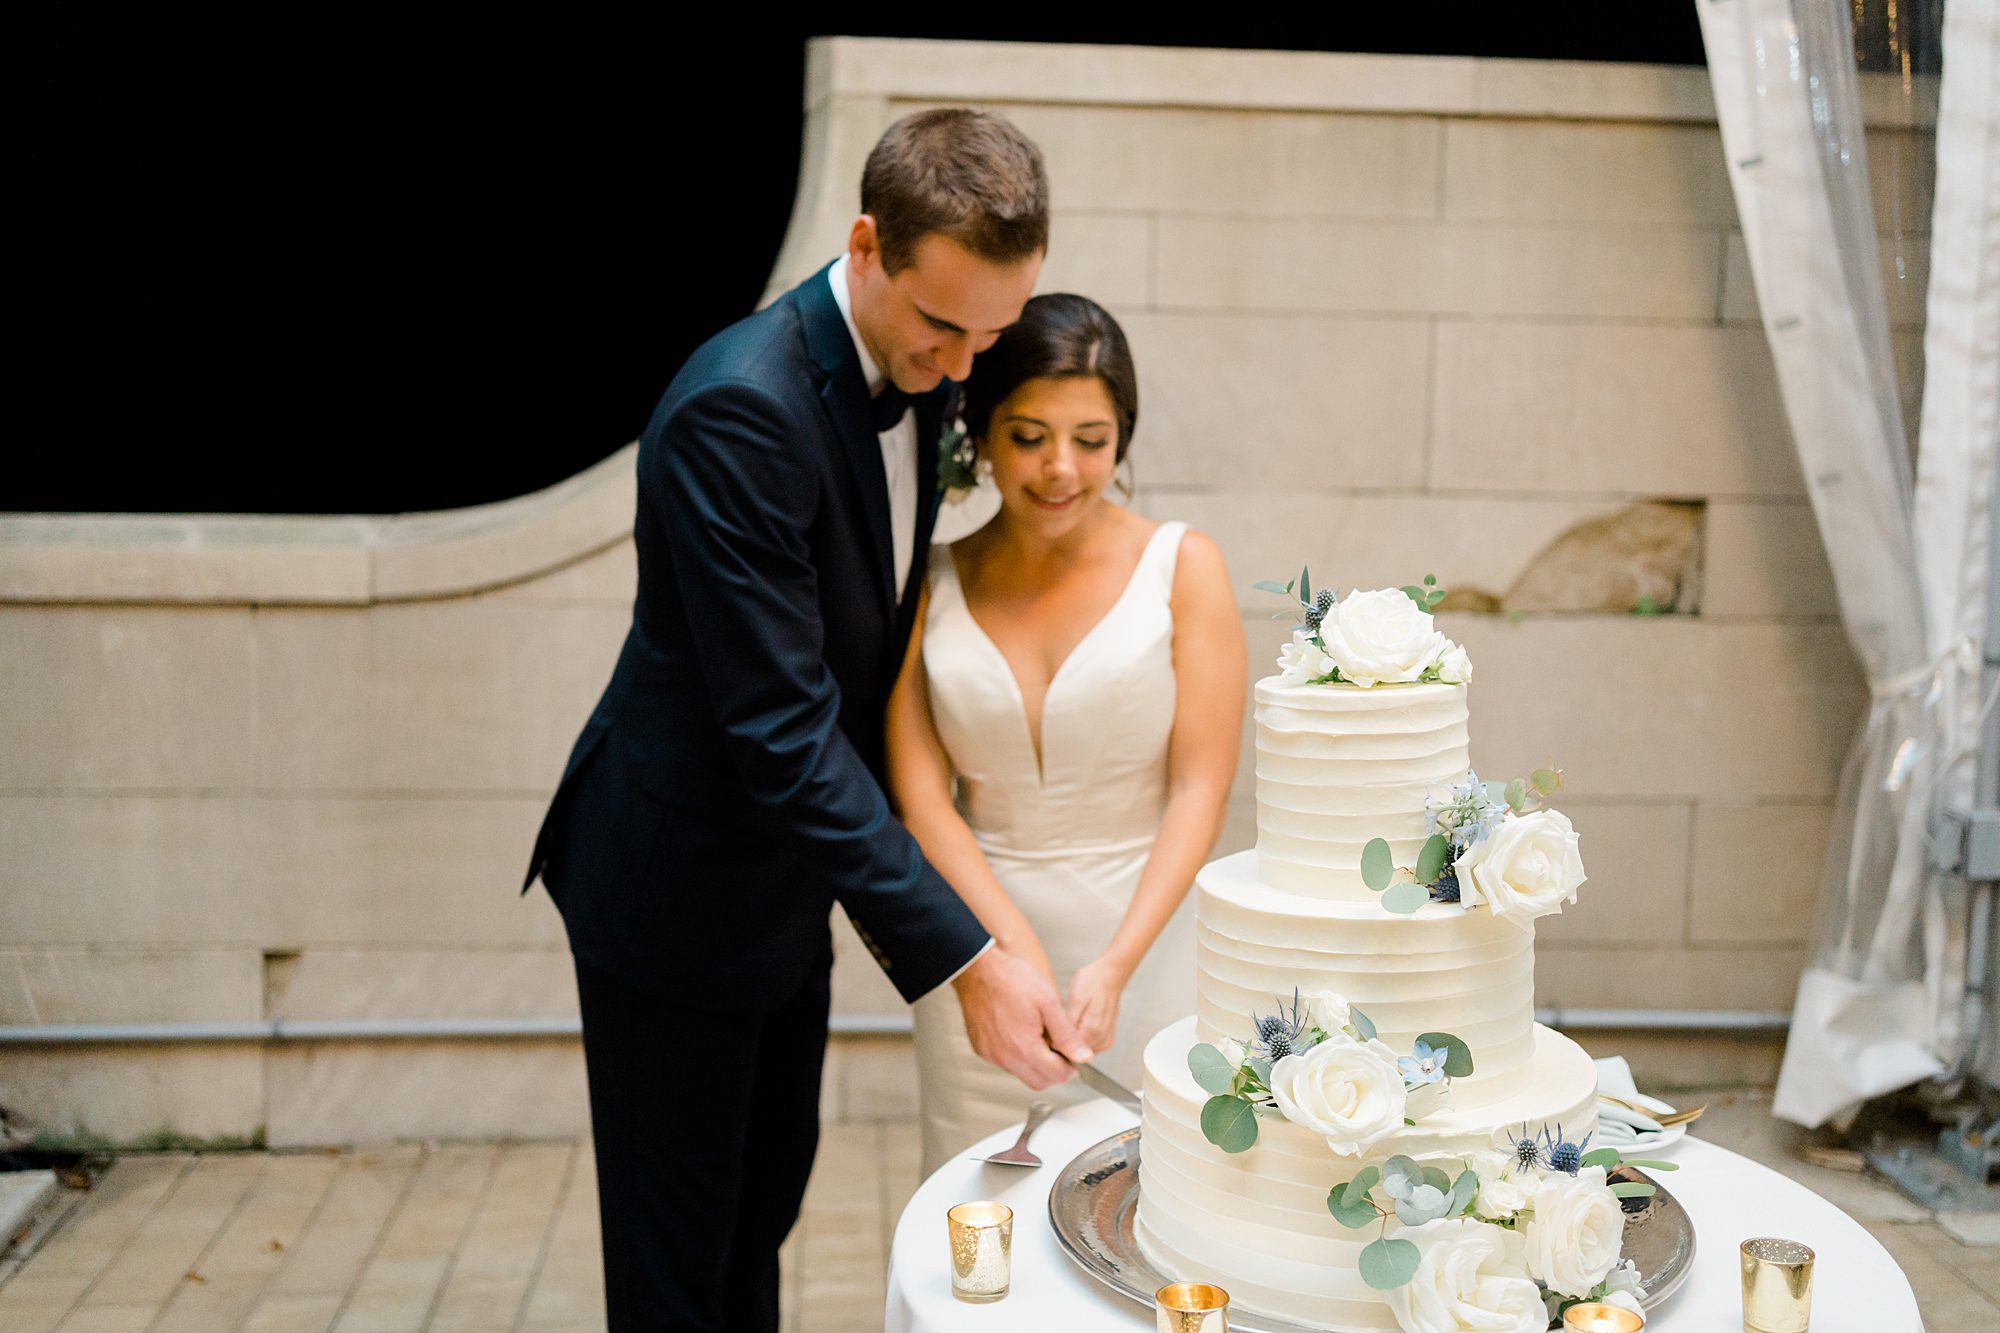 newlyweds cut their wedding cake